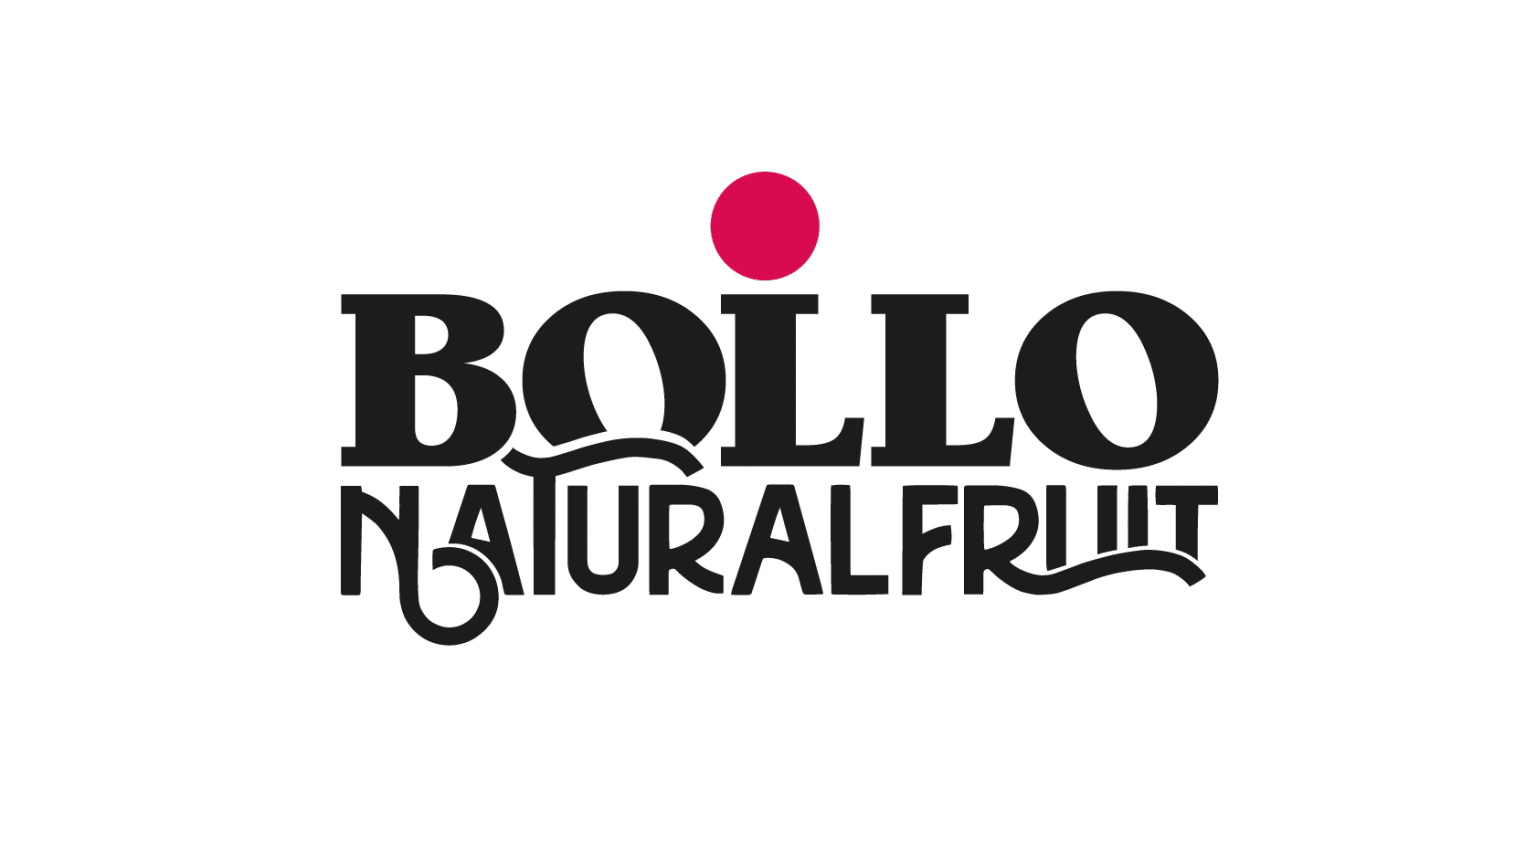 Bollo Natural Fruit registra una facturación de 500 millones de euros tras su integración en TNFC